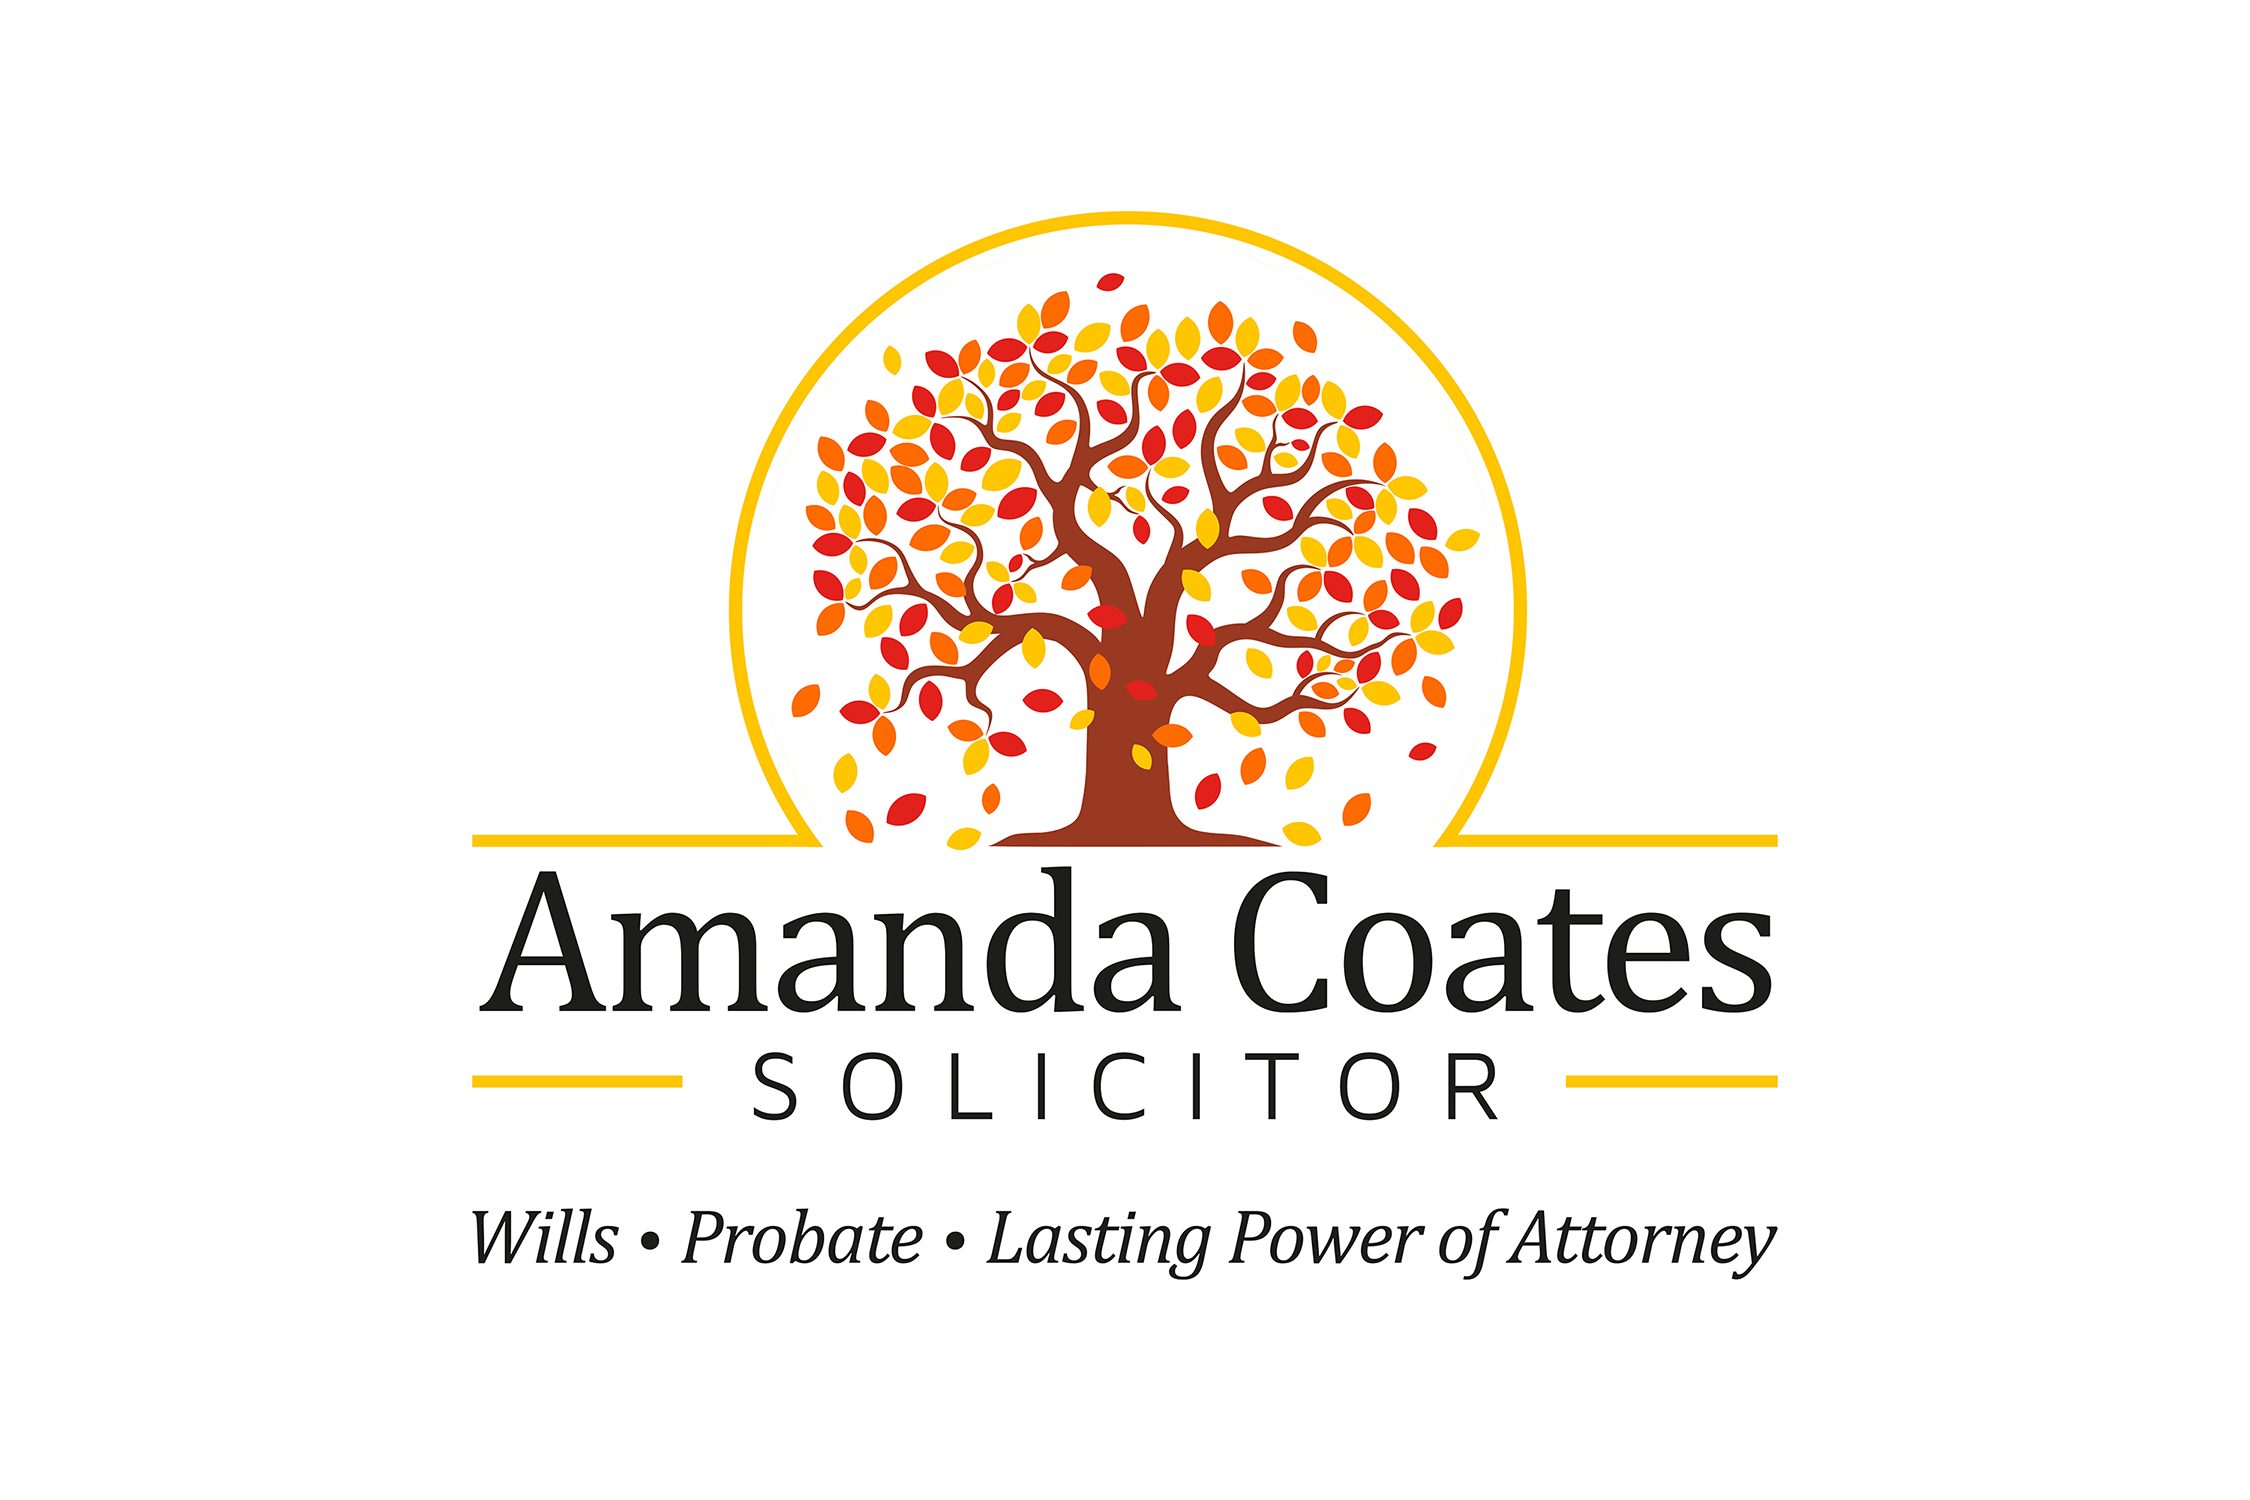 Amanda Coates Solicitor